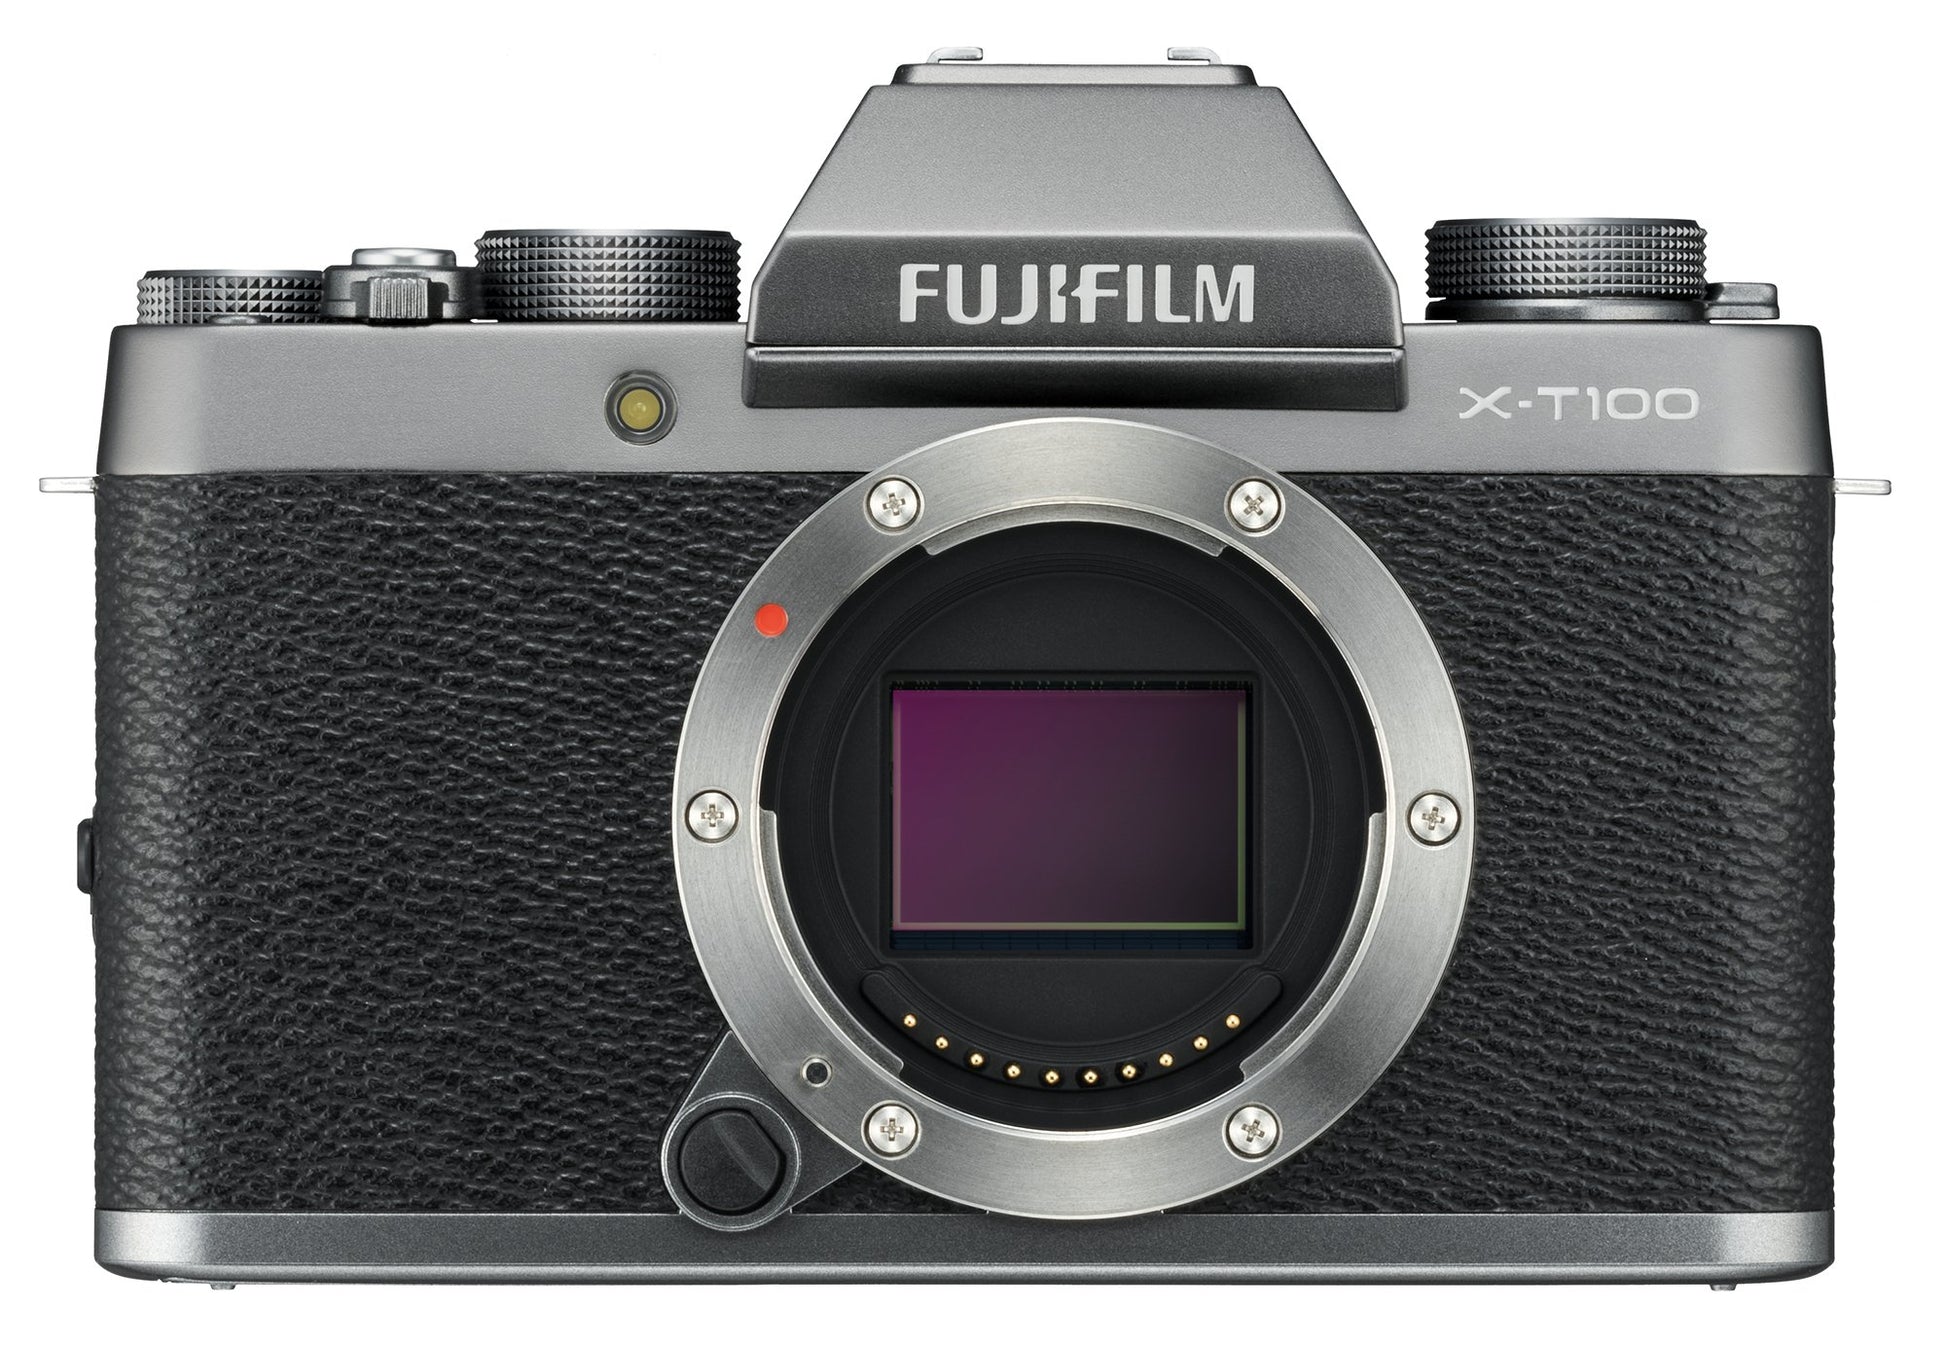 Fujifilm xt100 camera